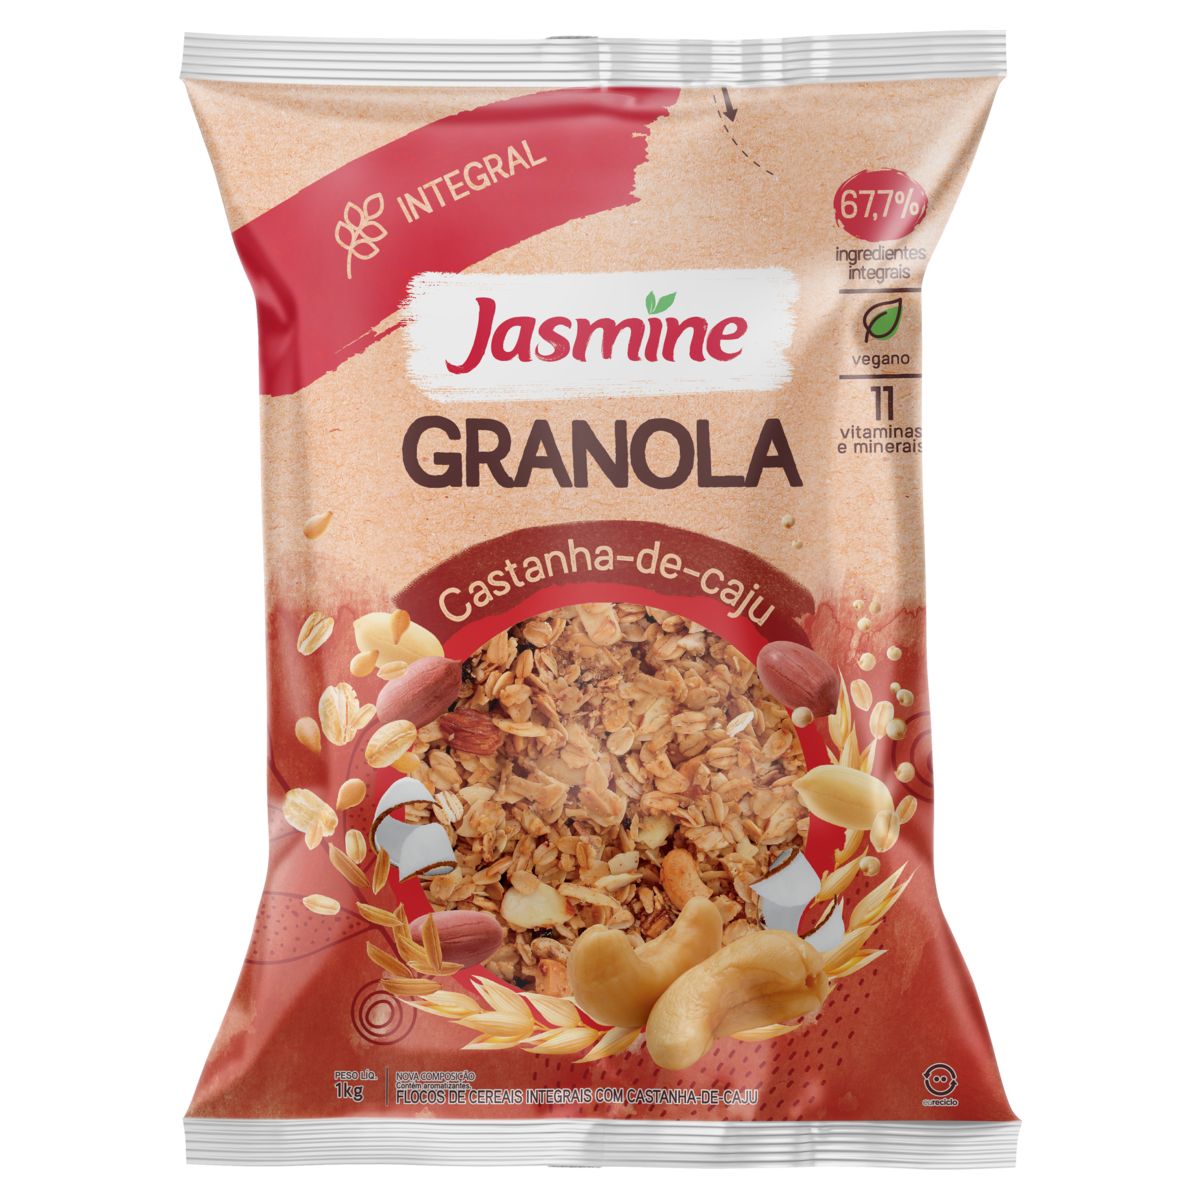 Granola Jasmine Castanha-de-Caju 67,7% Integral Pacote 1kg